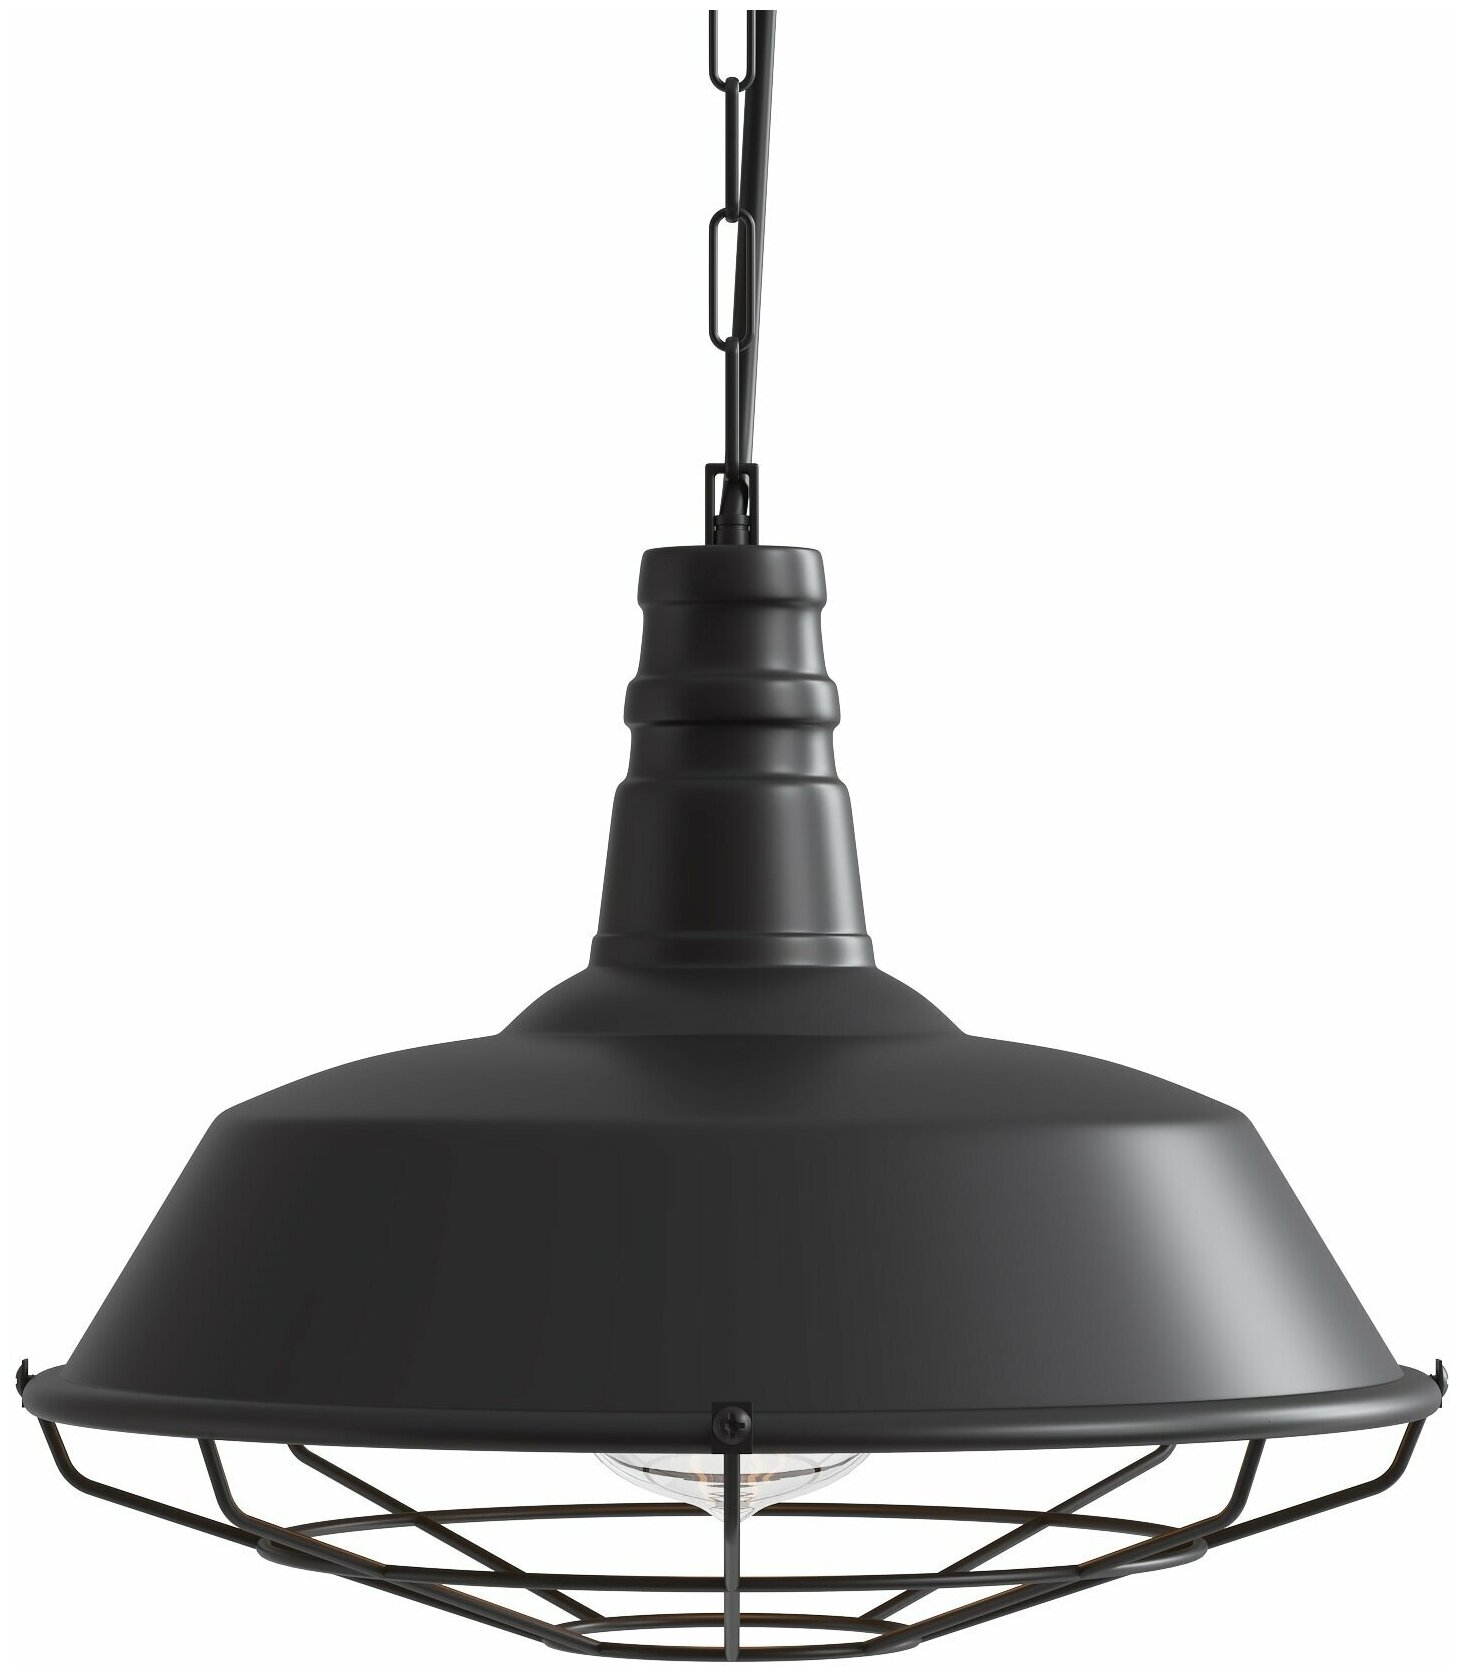 Подвесной светильник потолочный на кухню, в детскую комнату, в спальню GSMIN Loft Flat люстра в винтажном стиле железный 26 см. (Черный)